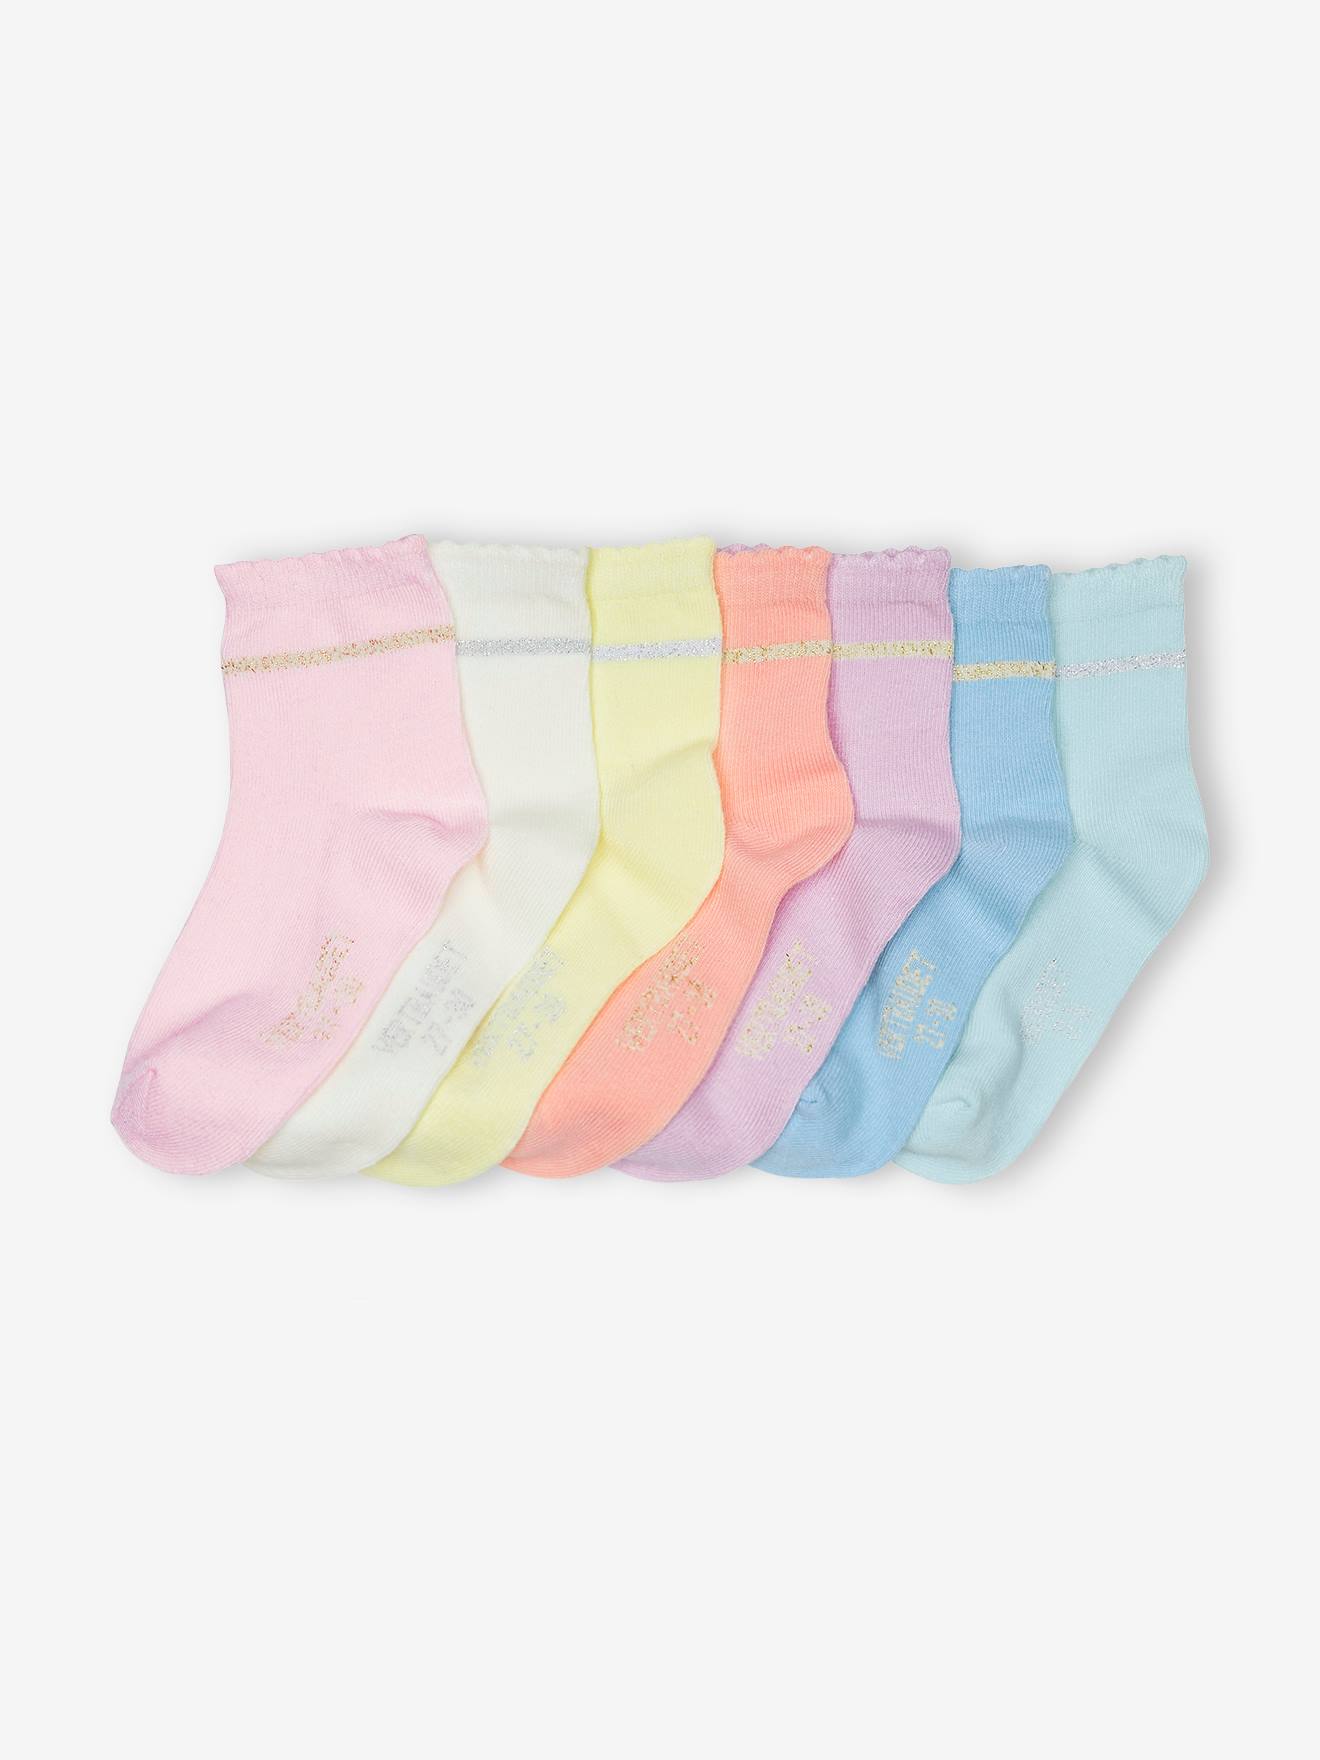 Pack of 7 Pairs of Socks for Girls rose